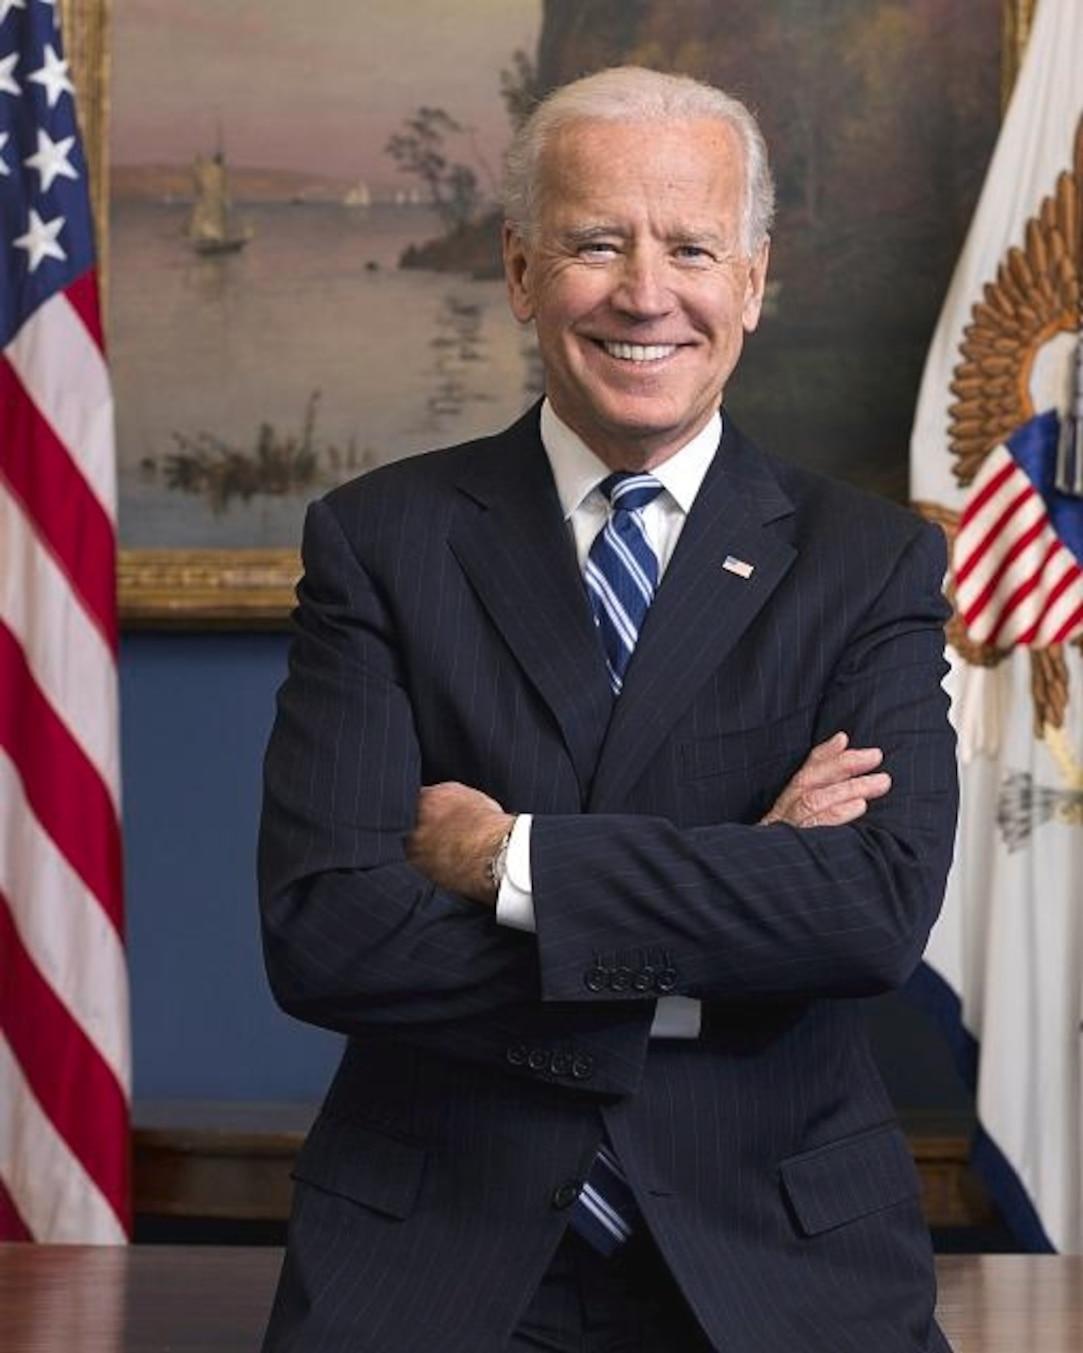 Joe Biden facts and photos